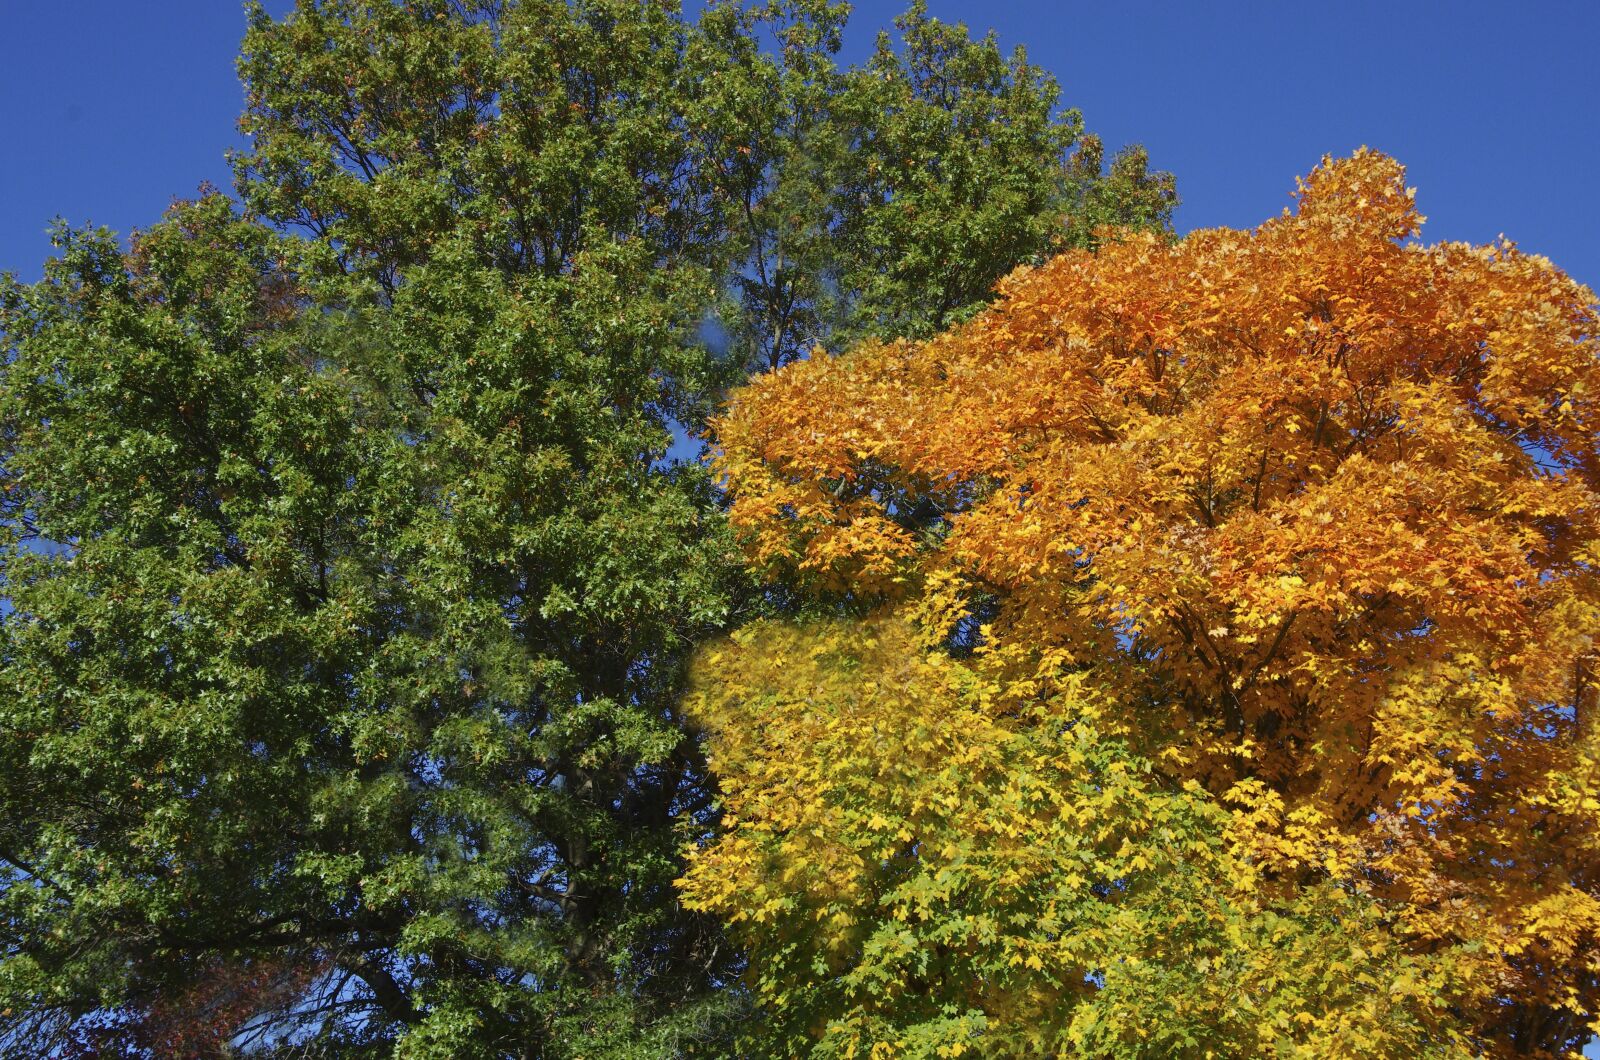 Pentax smc DA 18-135mm F3.5-5.6ED AL [IF] DC WR sample photo. Trees, fall colors, autumn photography